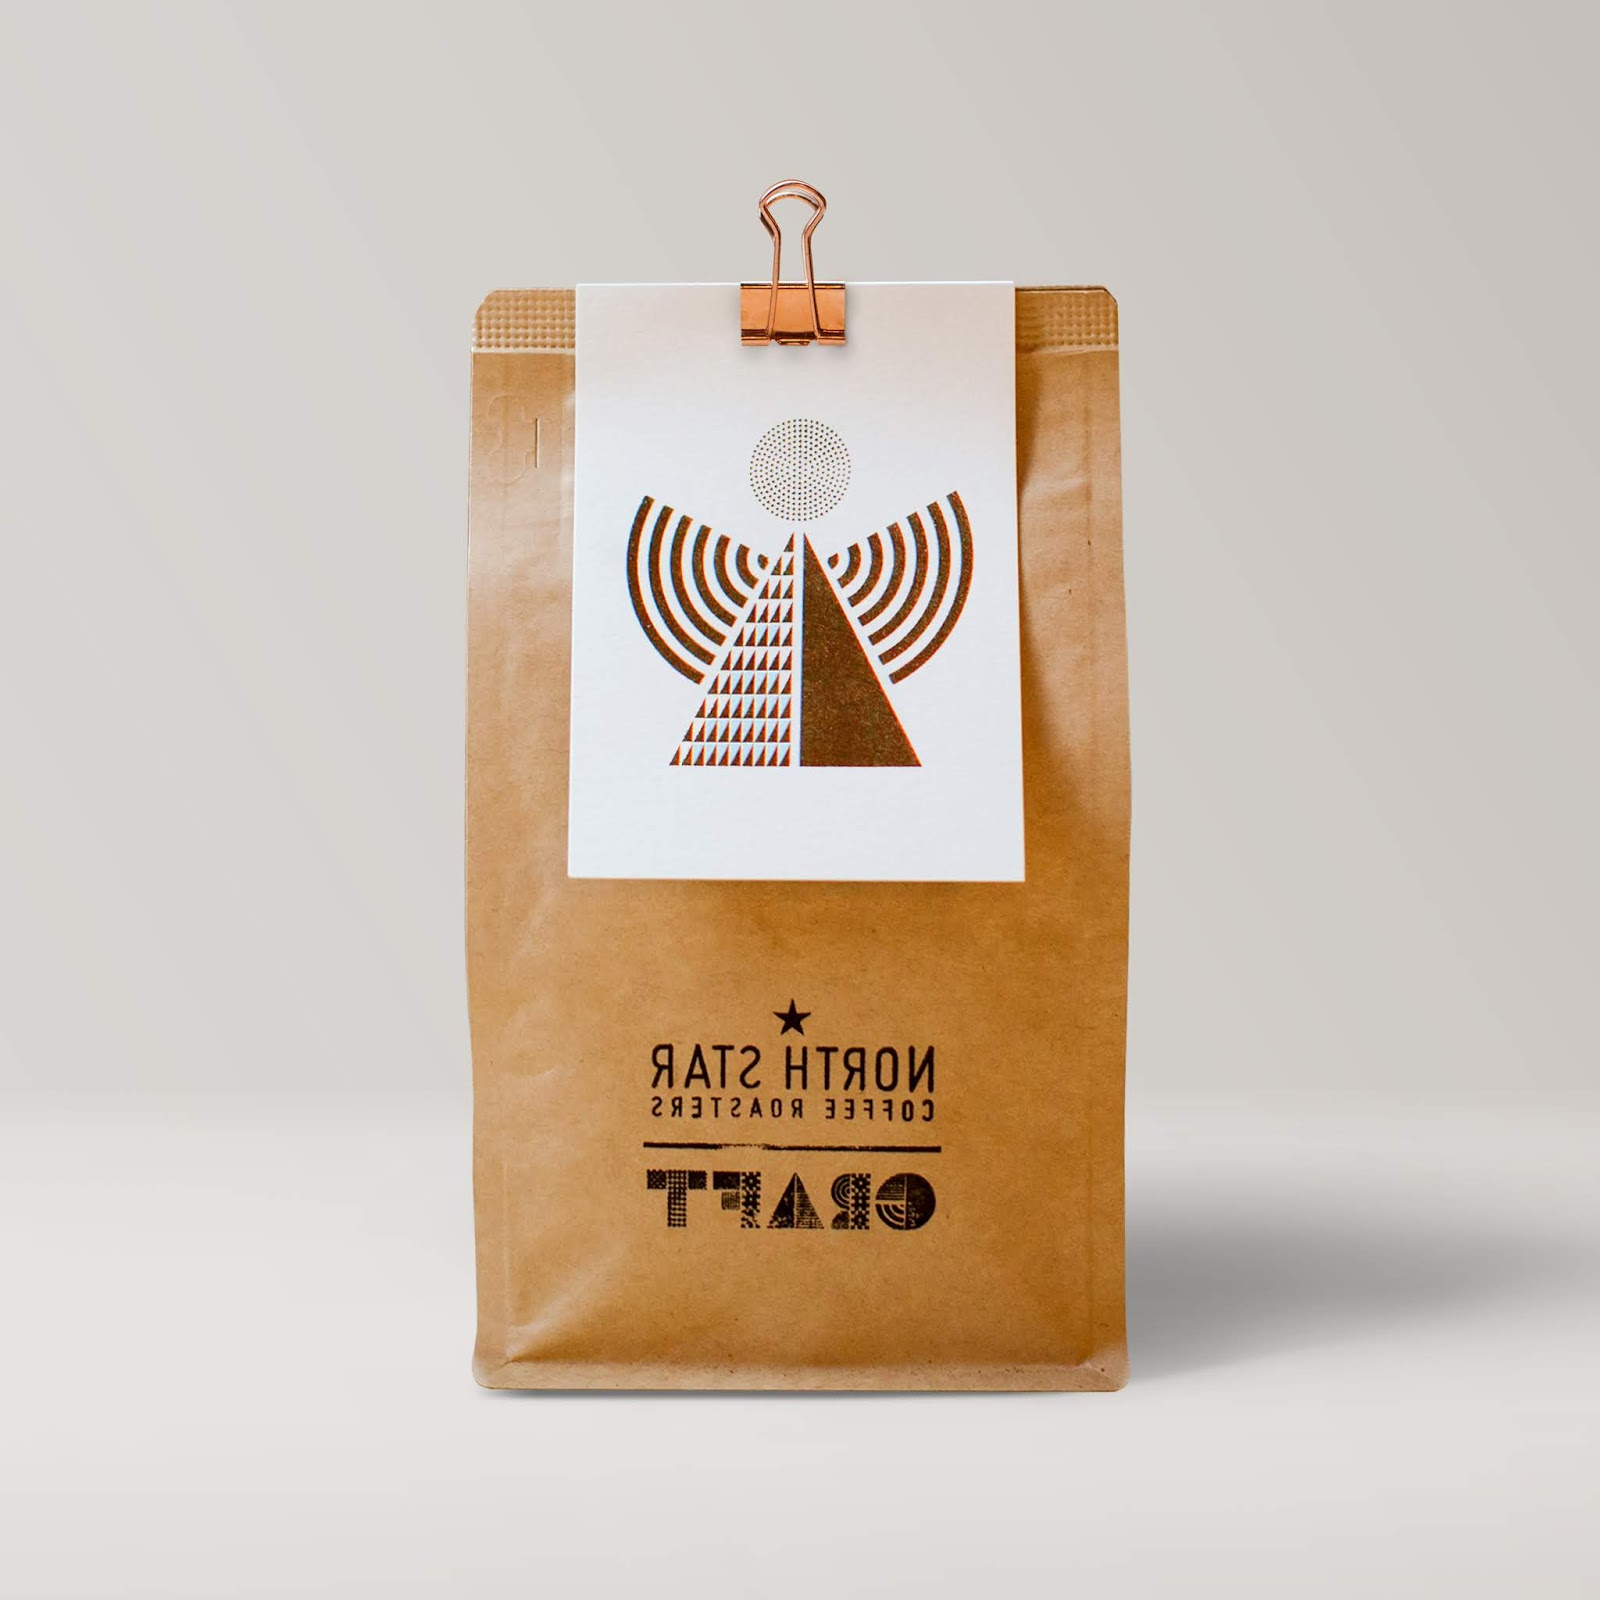 烘焙咖啡店西安欧亿体育‧（官方）平台网站
品牌策划包装设计VI设计logo设计